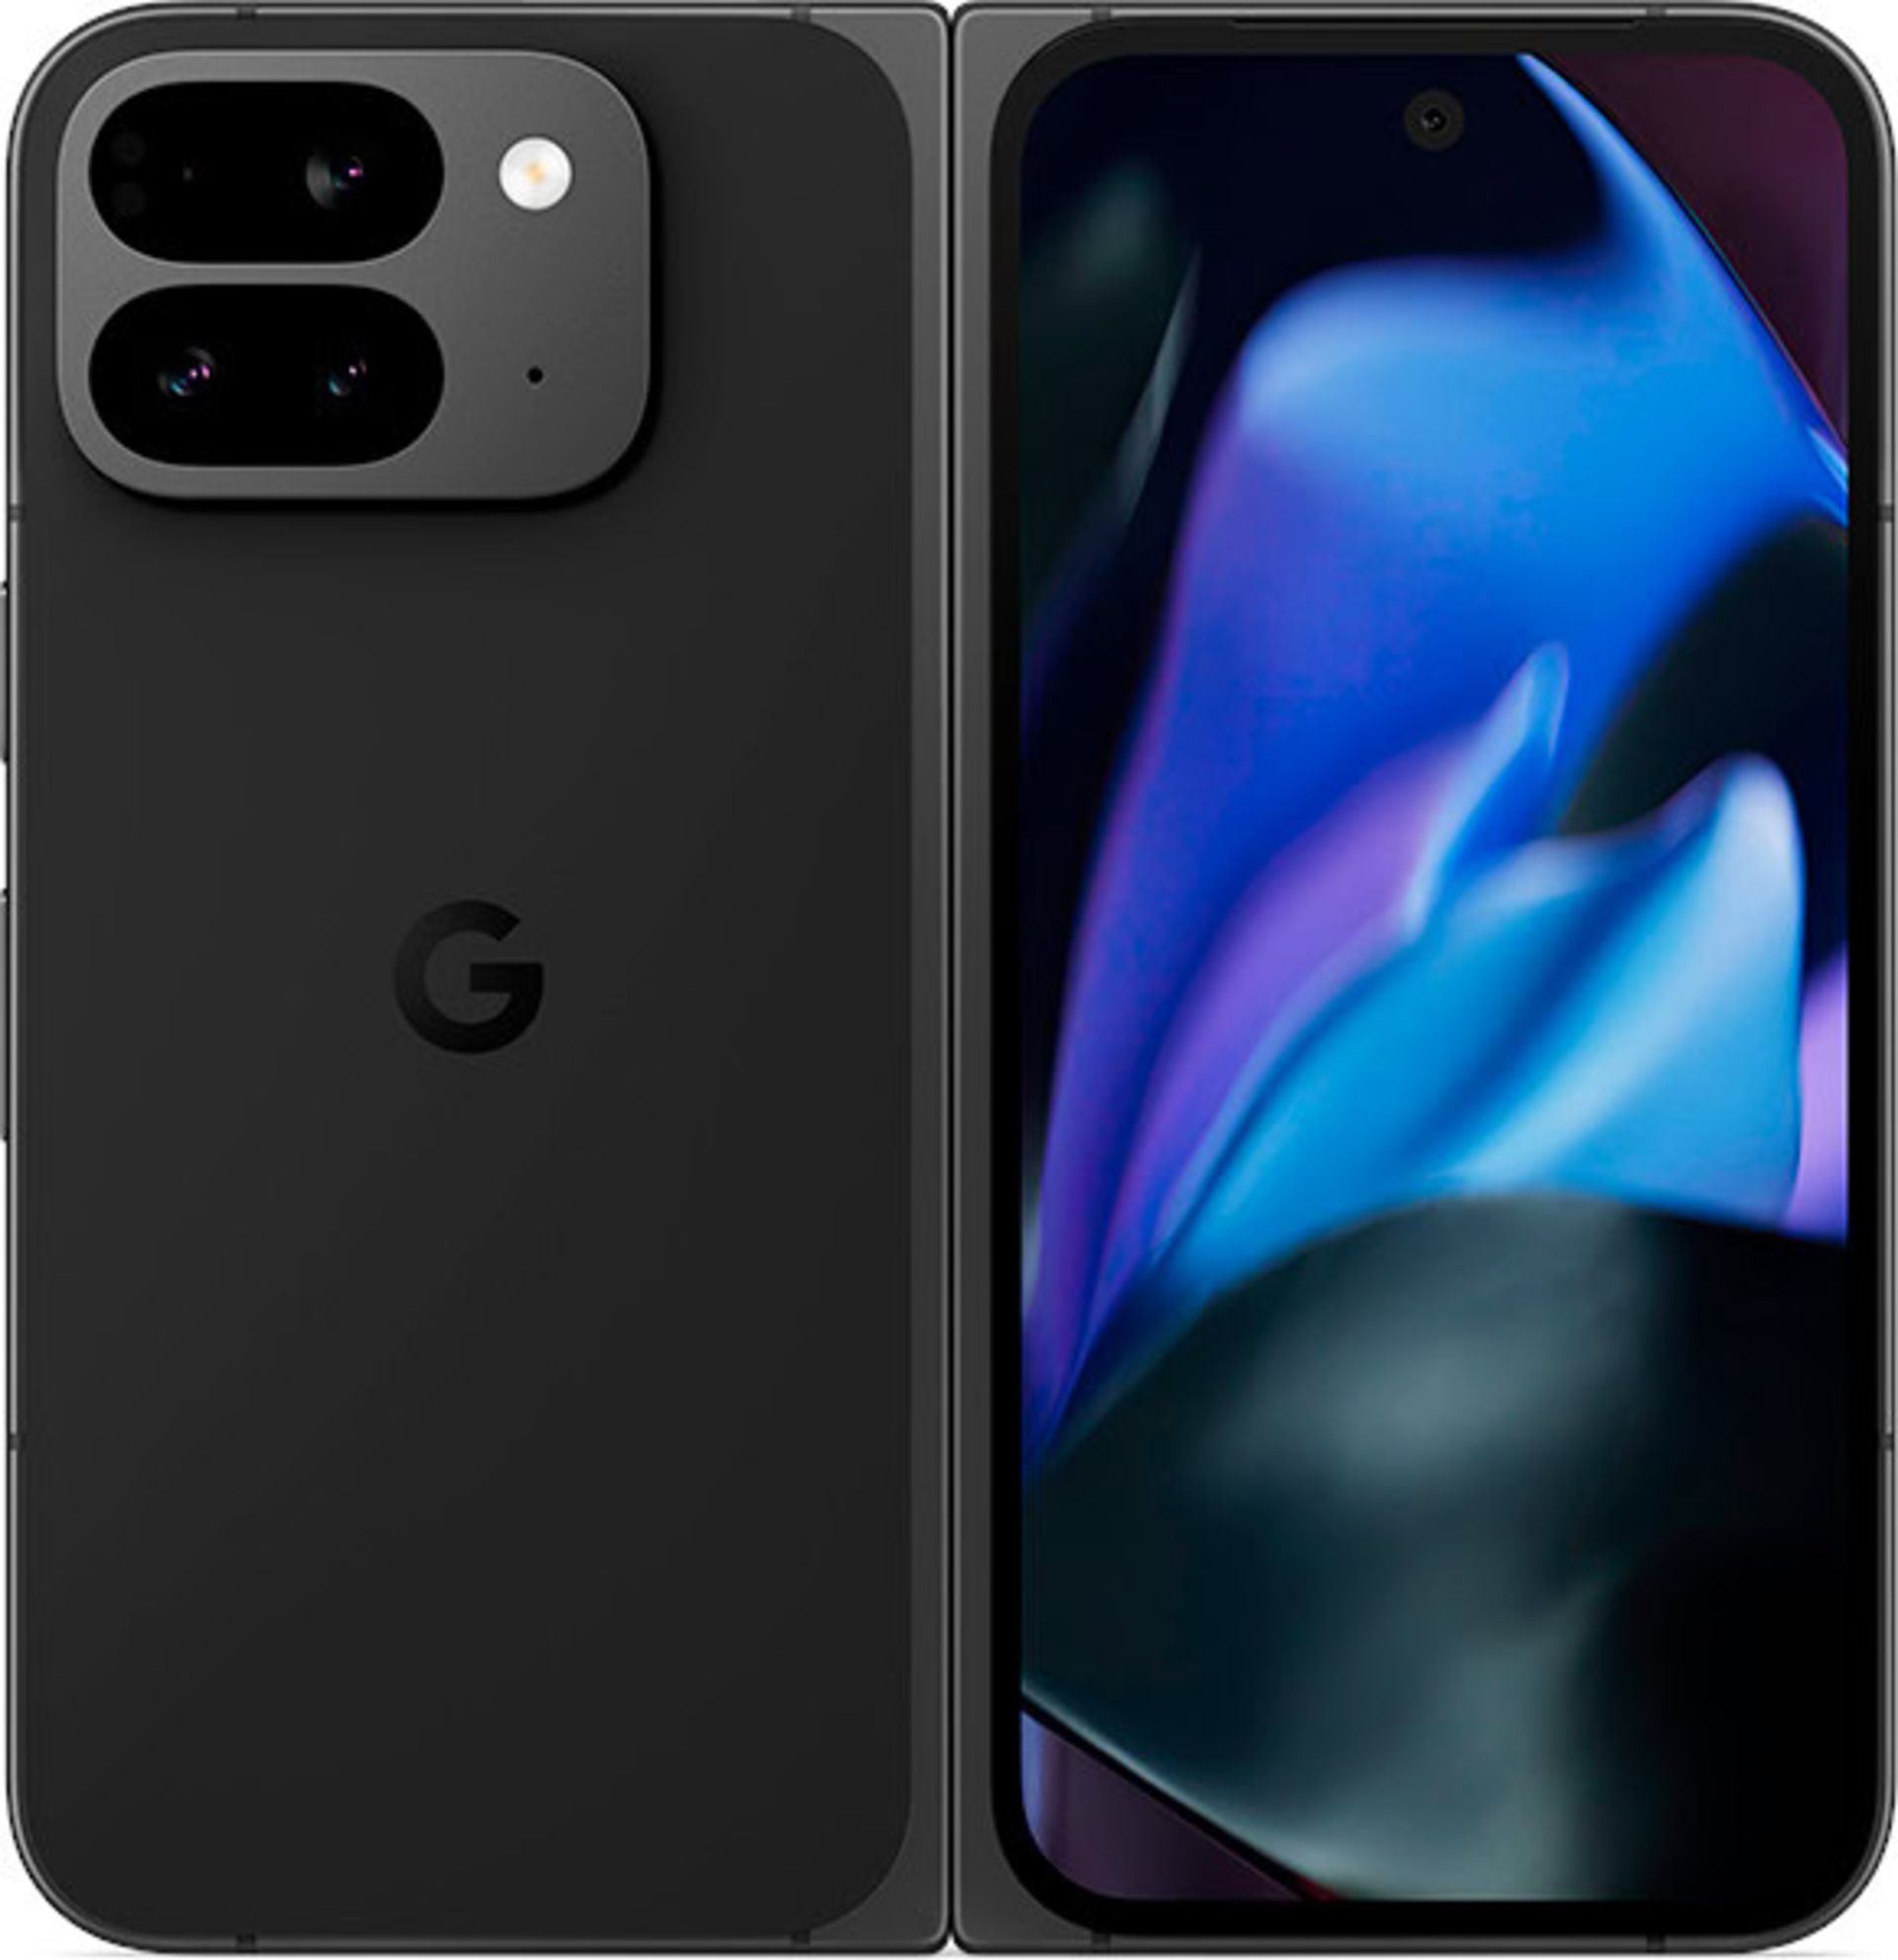 نمای پنل پشتی گوشی گوگل مدل پیکسل ۹ پرو فولد در رنگ تیره